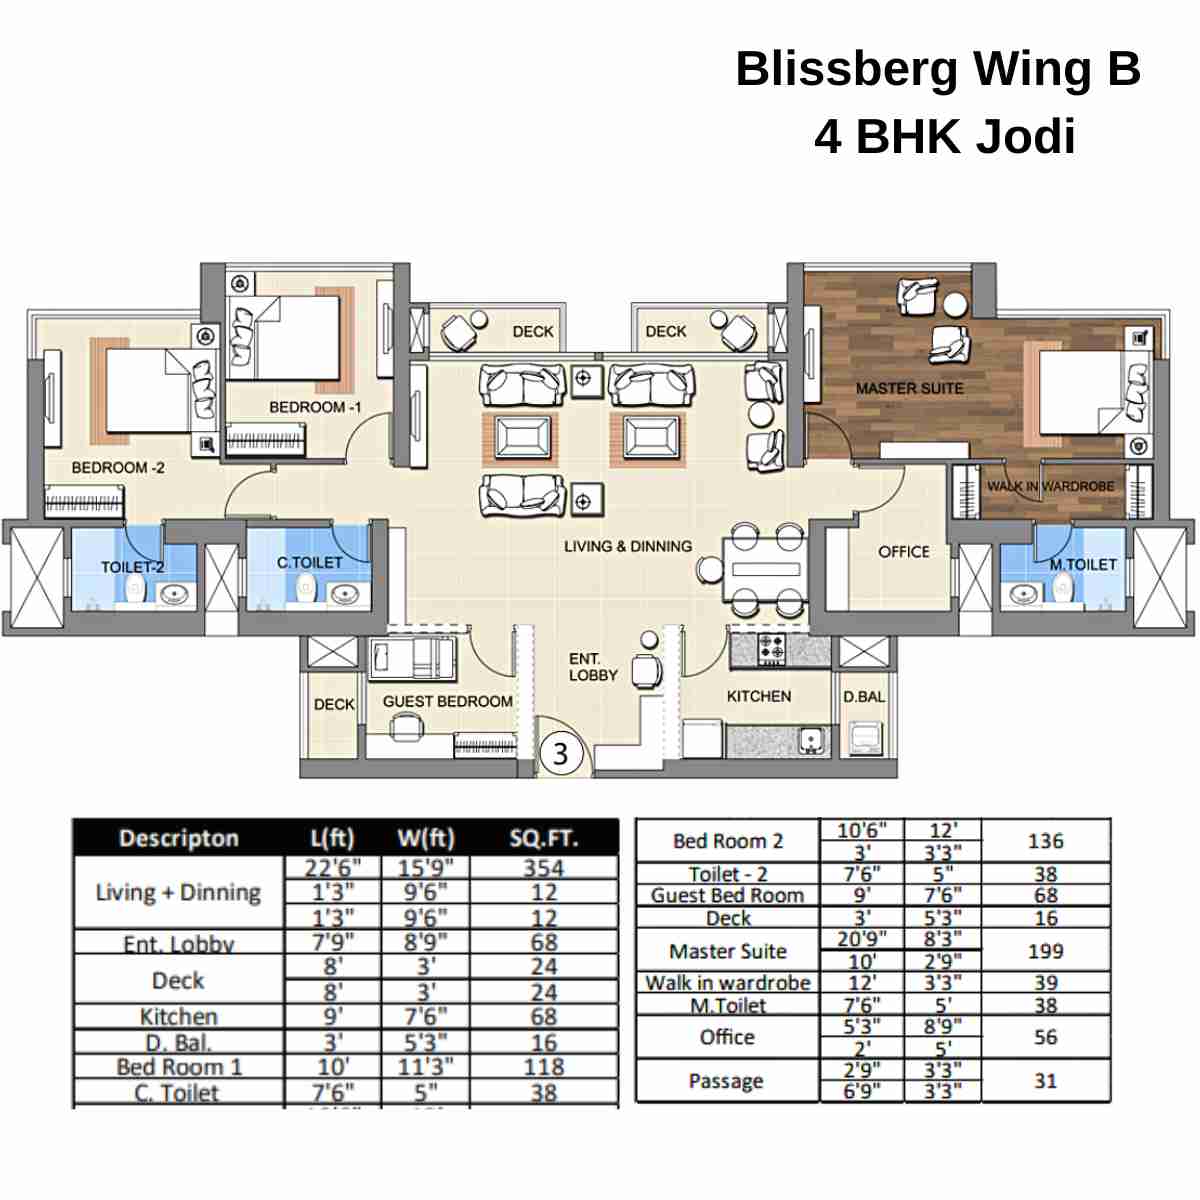 Sheth-Montana-Floor-Plan-Blissberg-Wing-B-4-BHK-Jodi